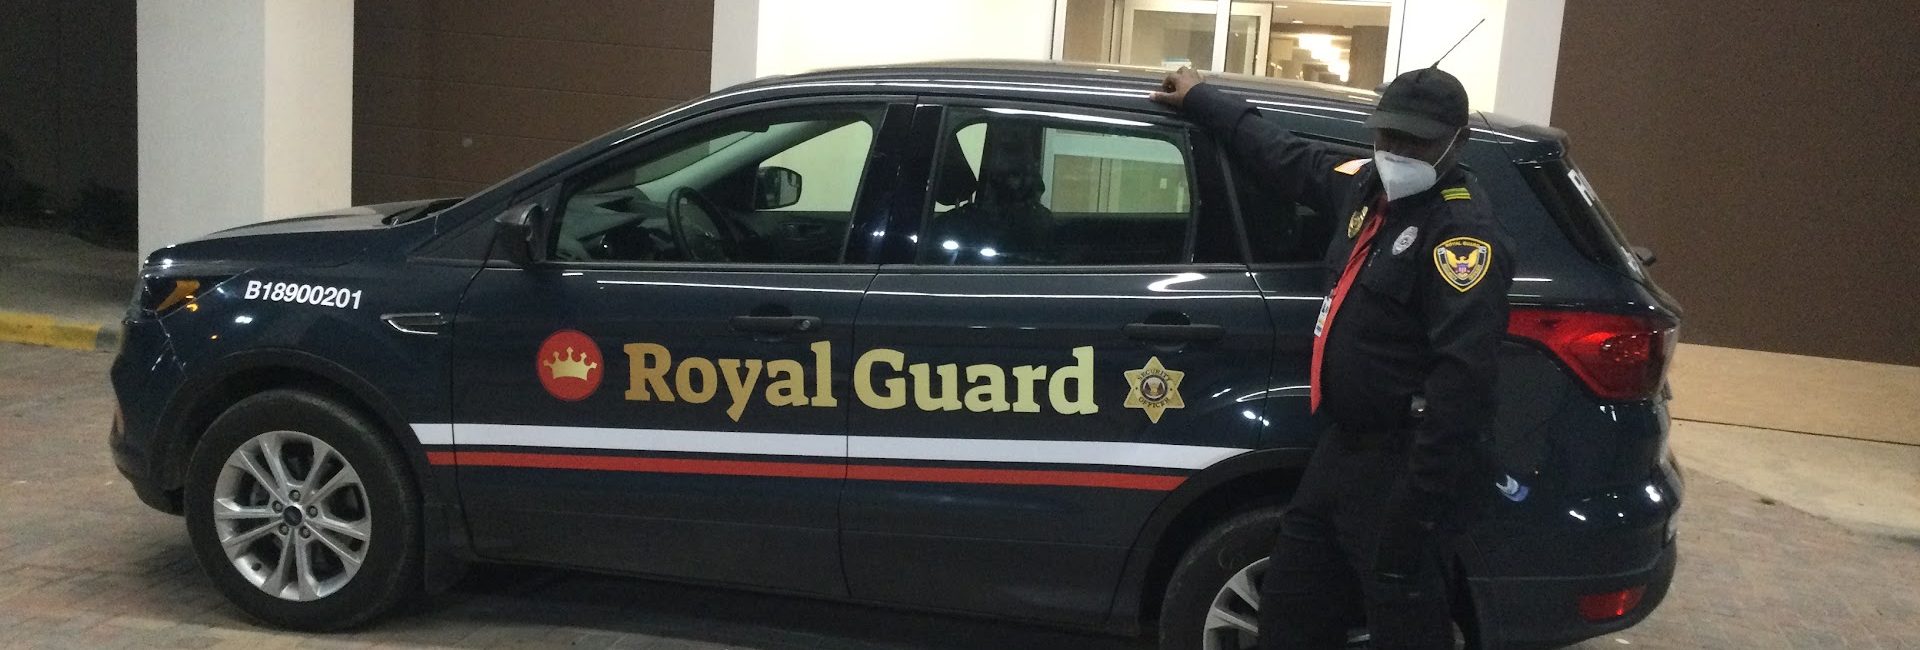 Royal Guard Security 6